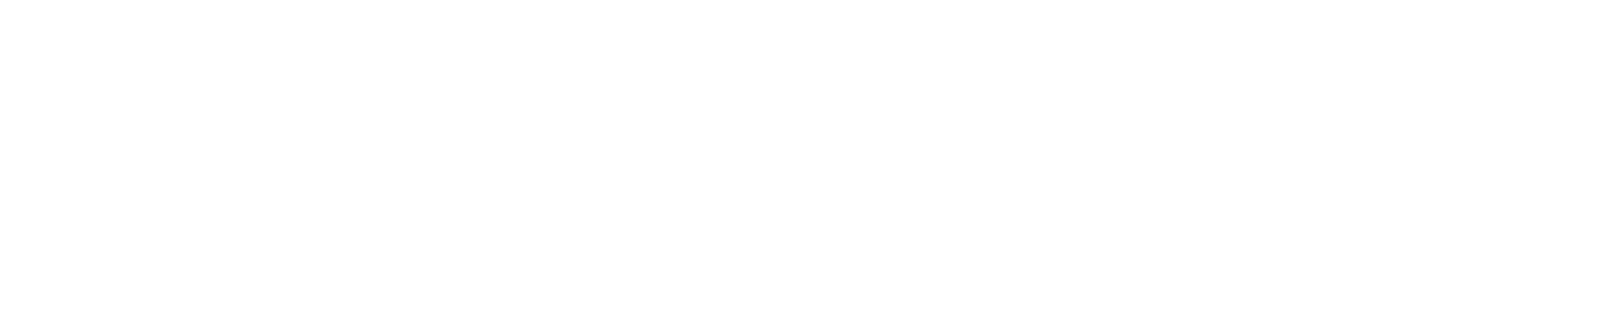 Magnachip Logo groß für dunkle Hintergründe (transparentes PNG)